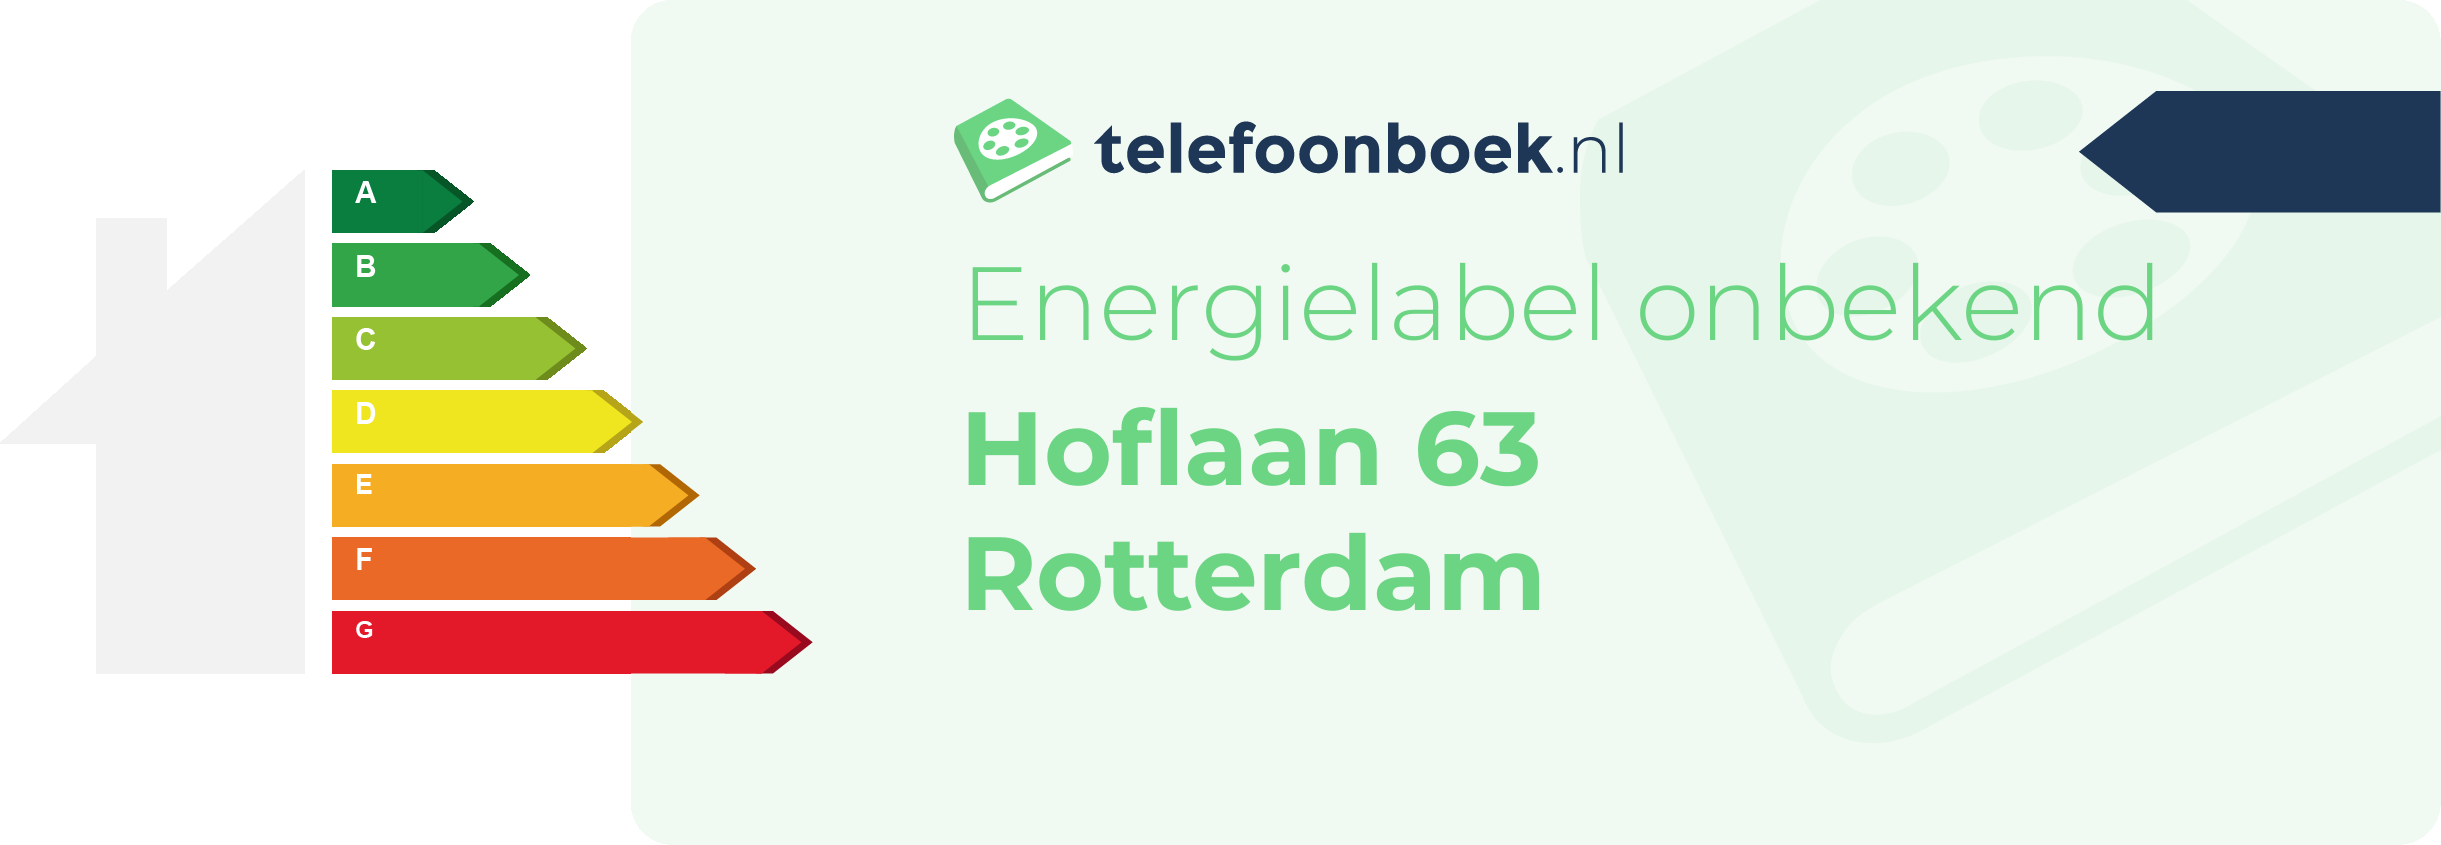 Energielabel Hoflaan 63 Rotterdam